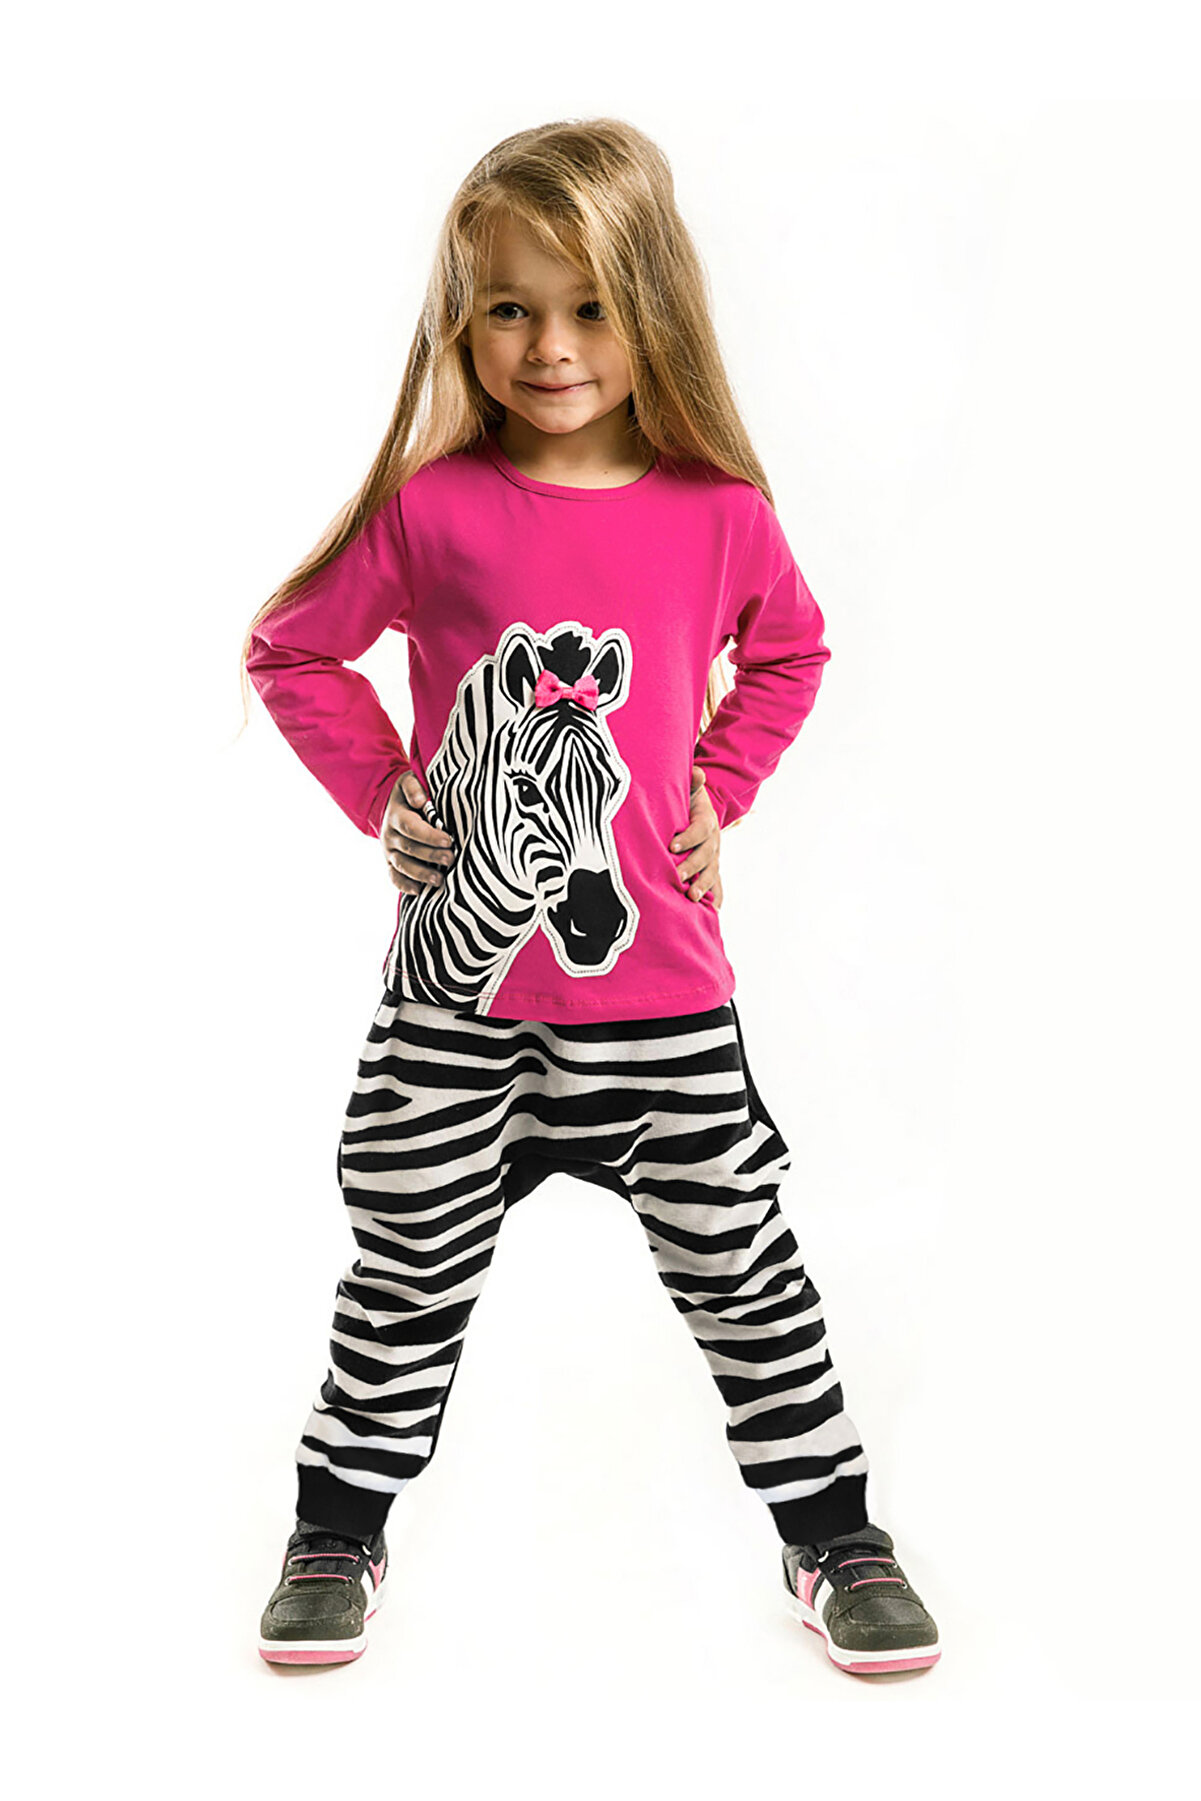 Denokids Zebra Fashion Kız Çocuk T-shirt Pantolon Takım